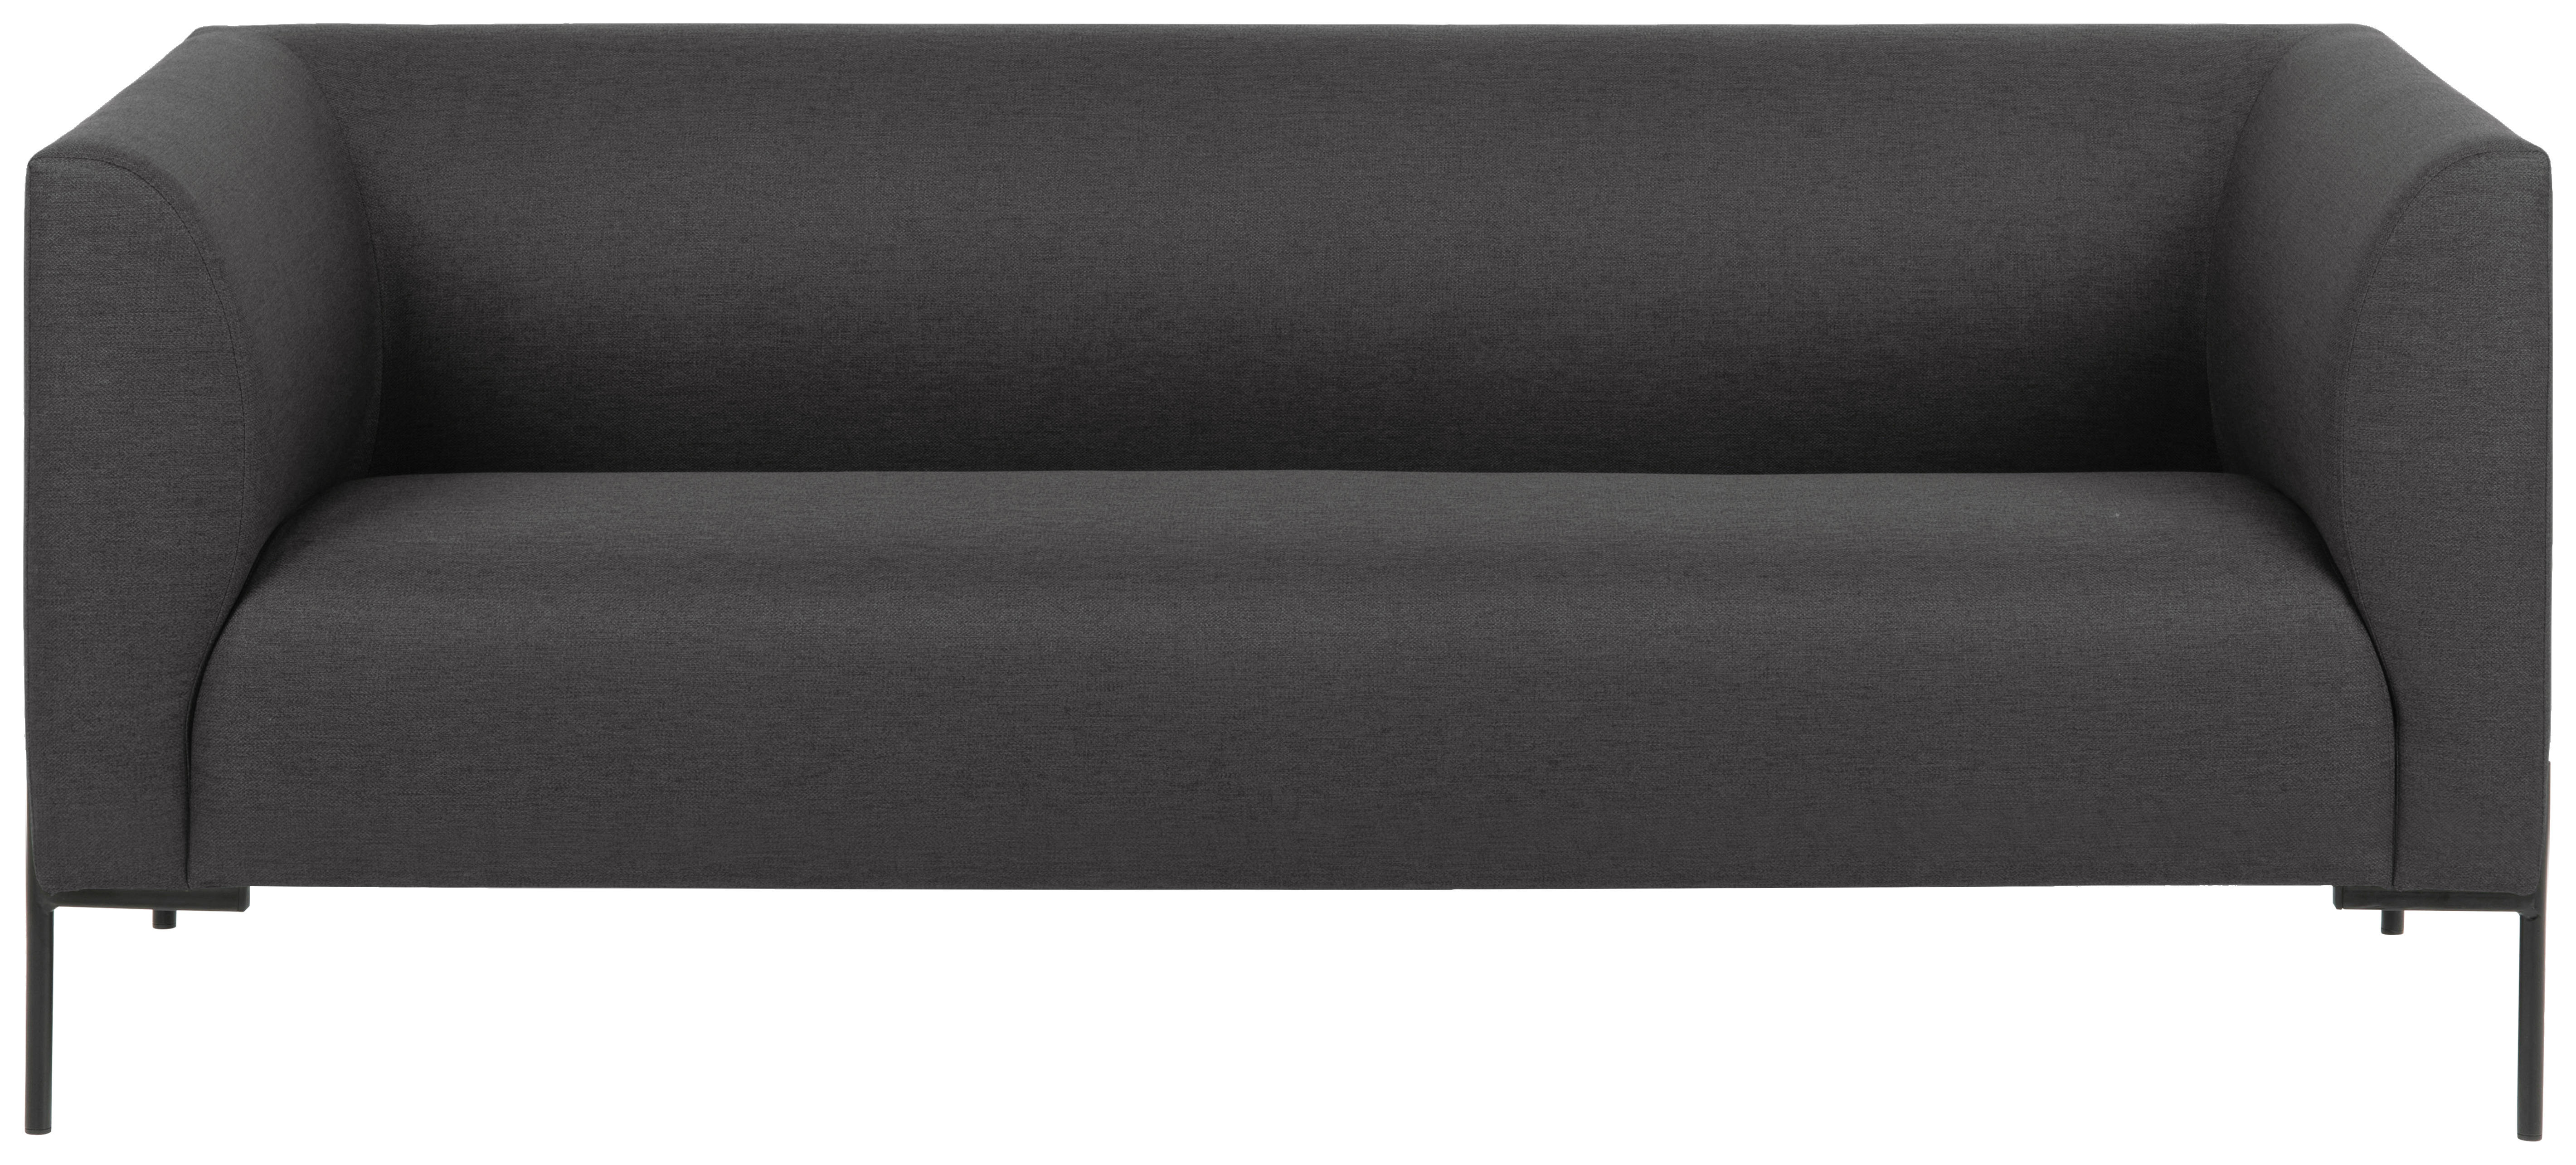 2,5-SEDAČKA, kov, textil, tmavosivá - čierna/tmavosivá, Trend, kov/textil (185/76/76cm) - Ambia Home